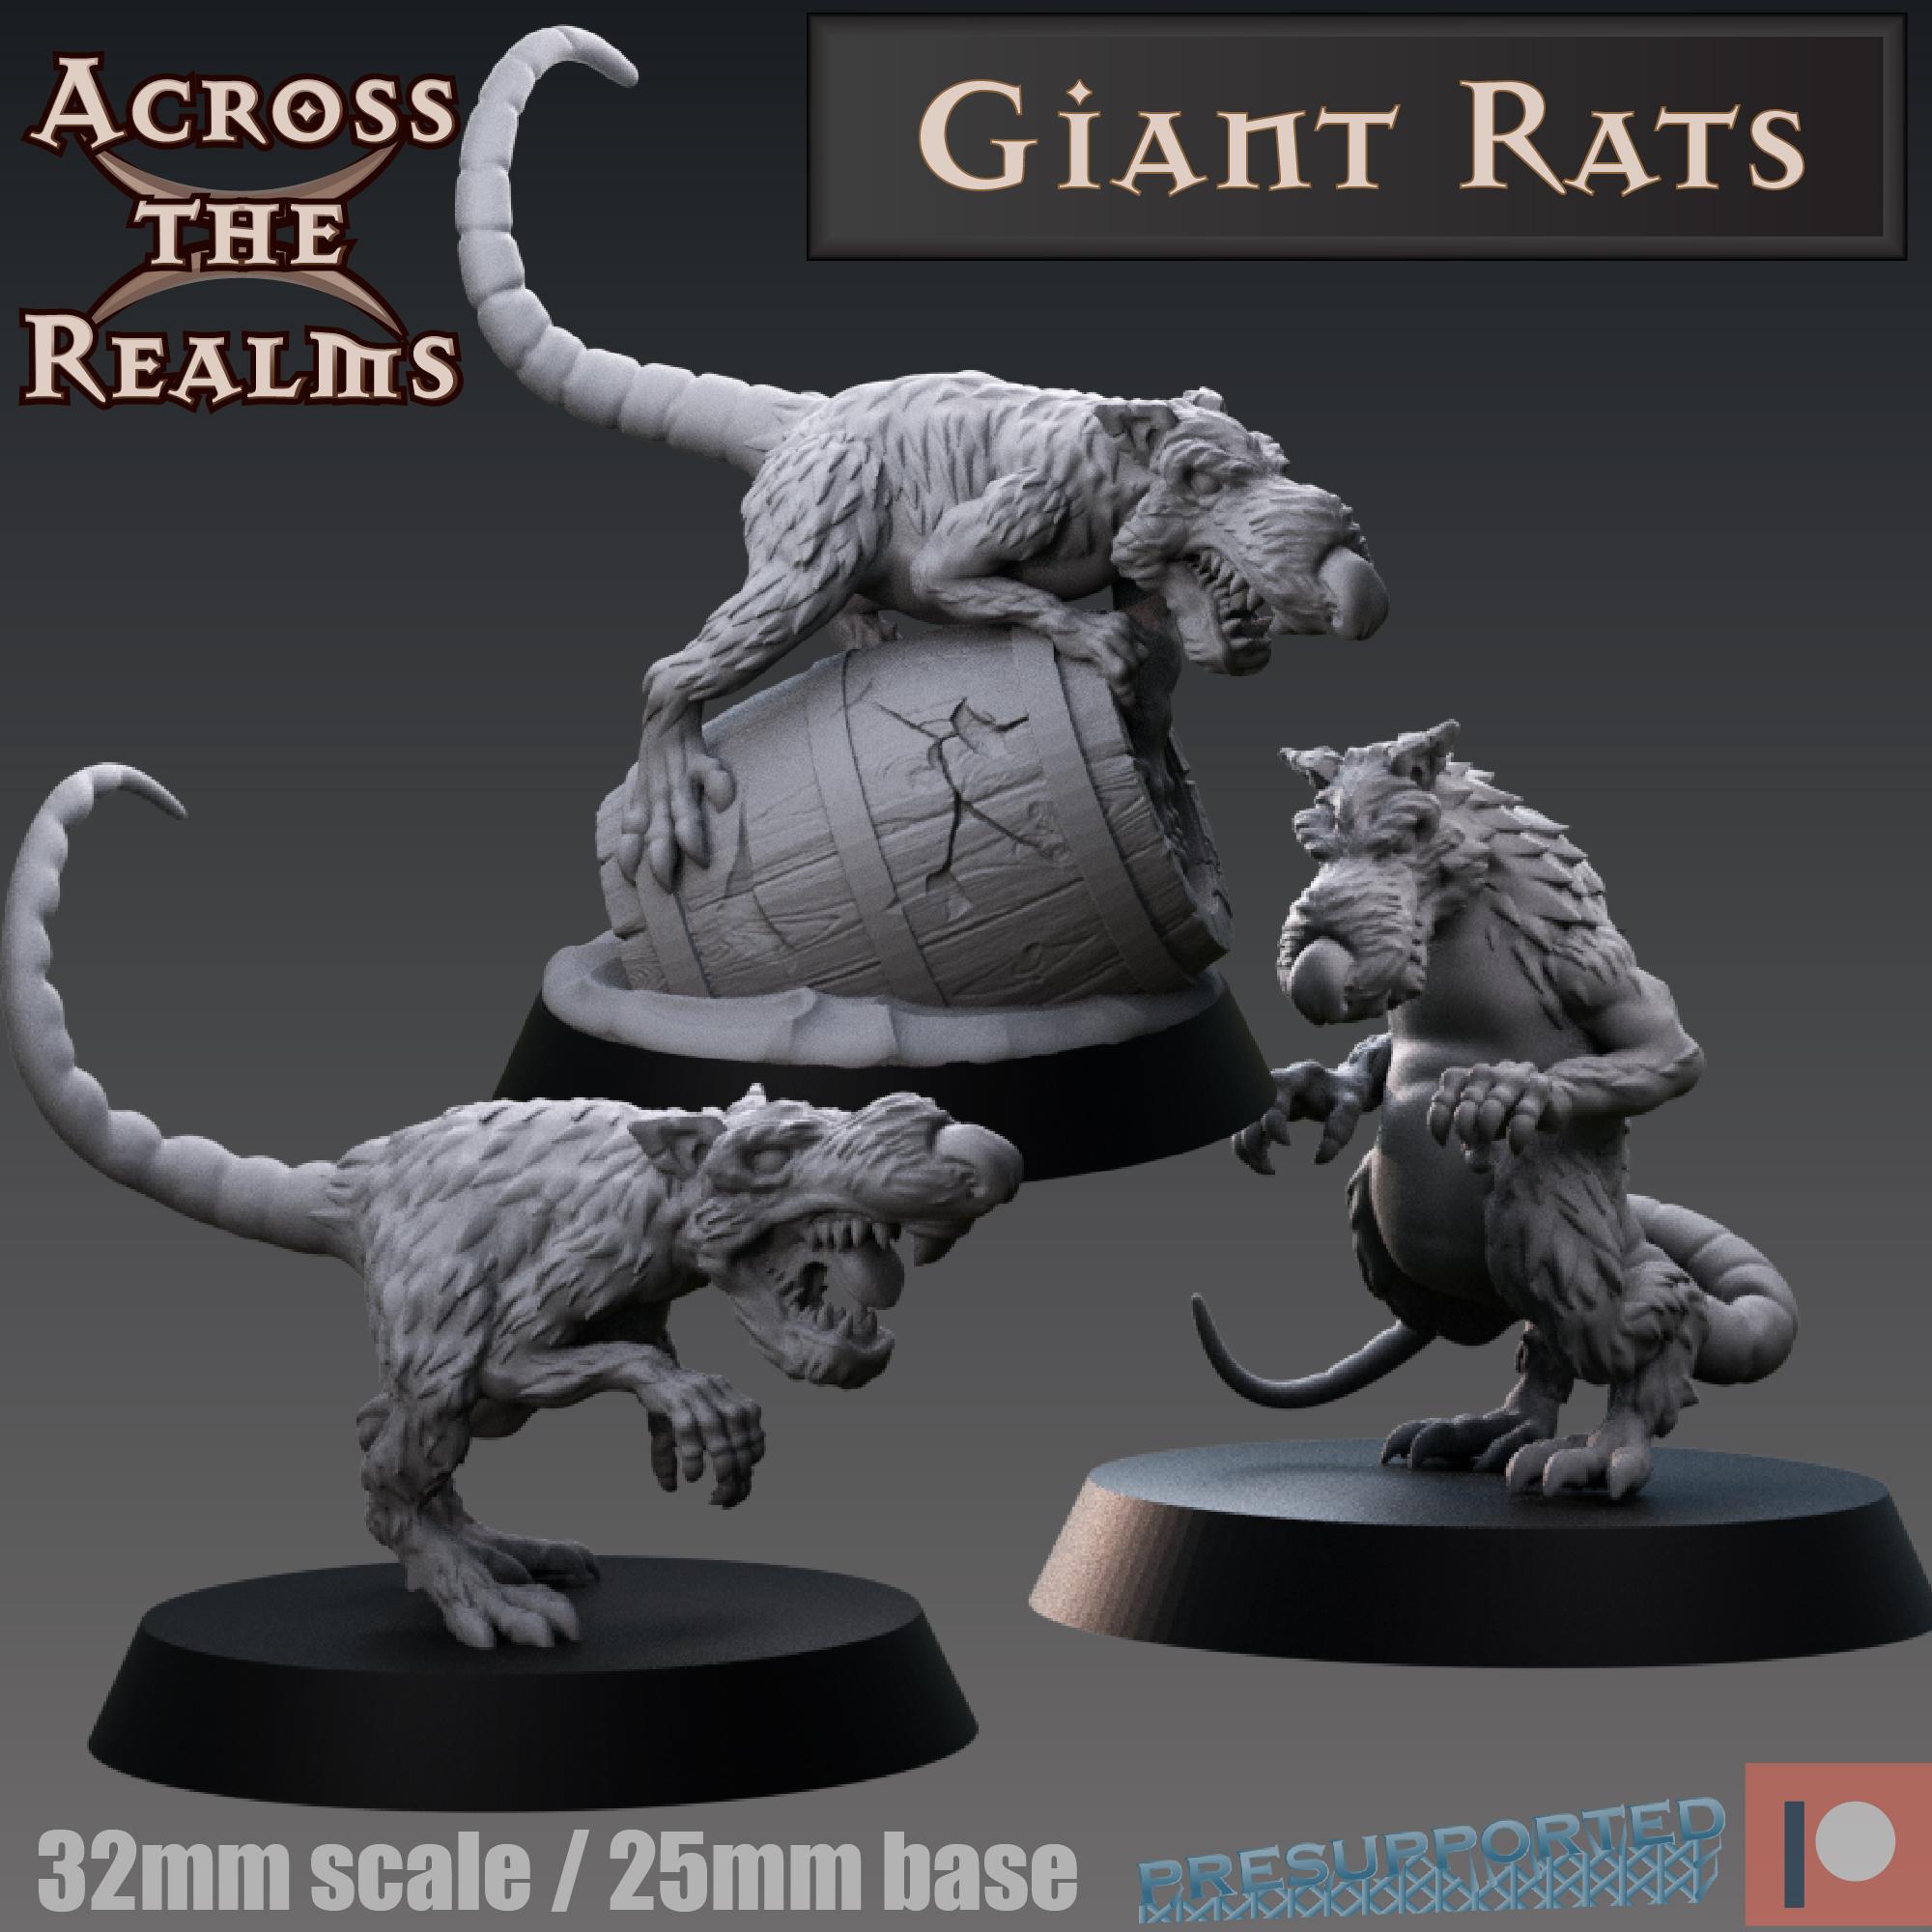 Giant rats 3d model